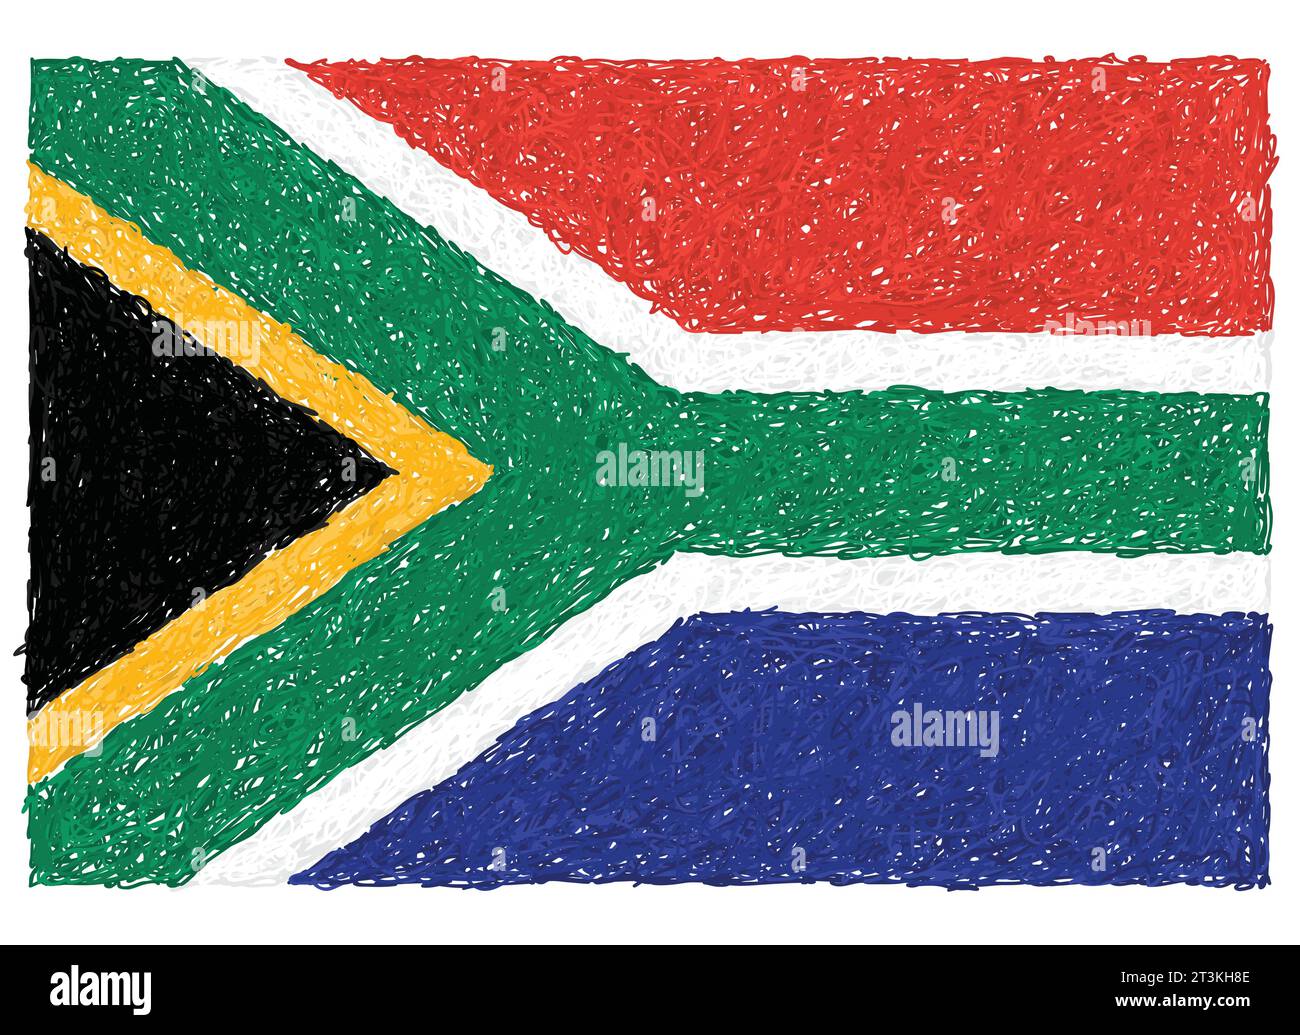 Image vectorielle libre de droits dessinée à la main du drapeau afrique du Sud Illustration de Vecteur